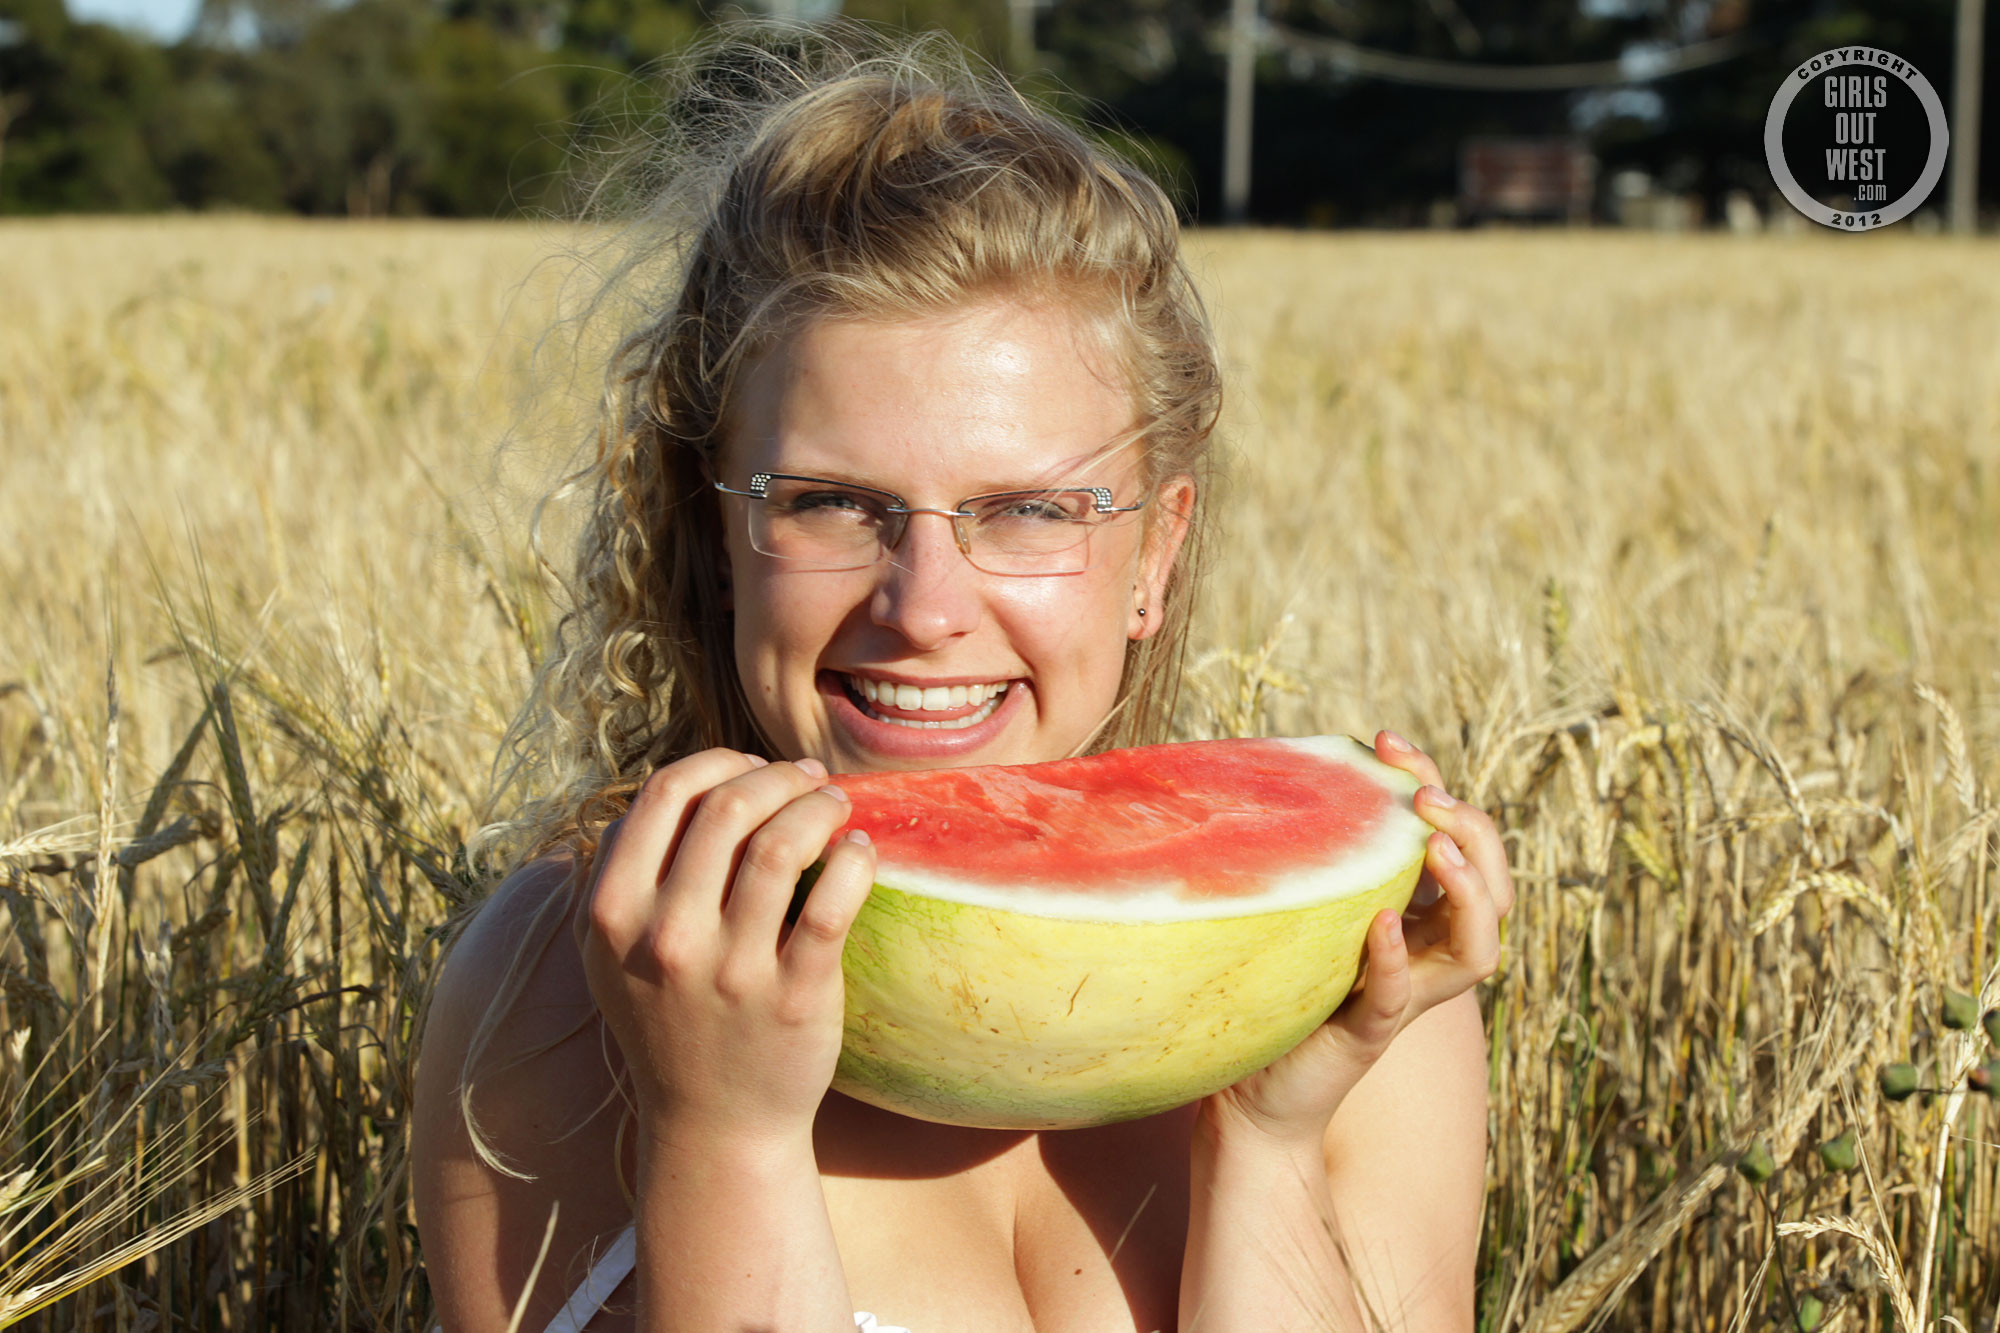 wpid-cute-australian-blonde-gretel-has-fun-eating-a-watermelon-in-the-nude-in-a-field1.jpg